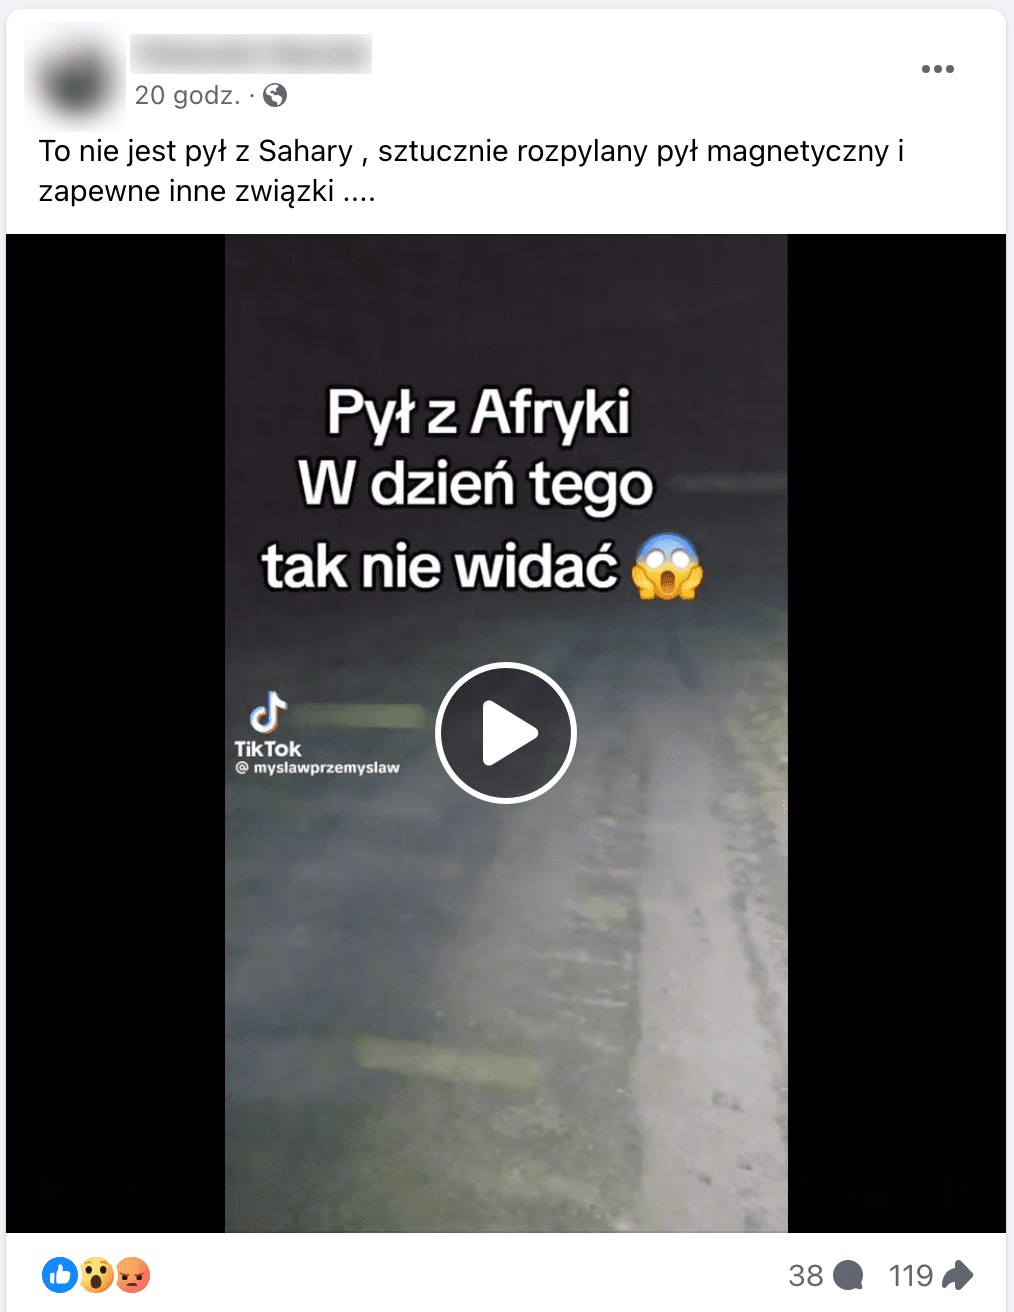 Zrzut ekranu posta na Facebooku. W kadrze dołączonego filmu widać drogę asfaltową.